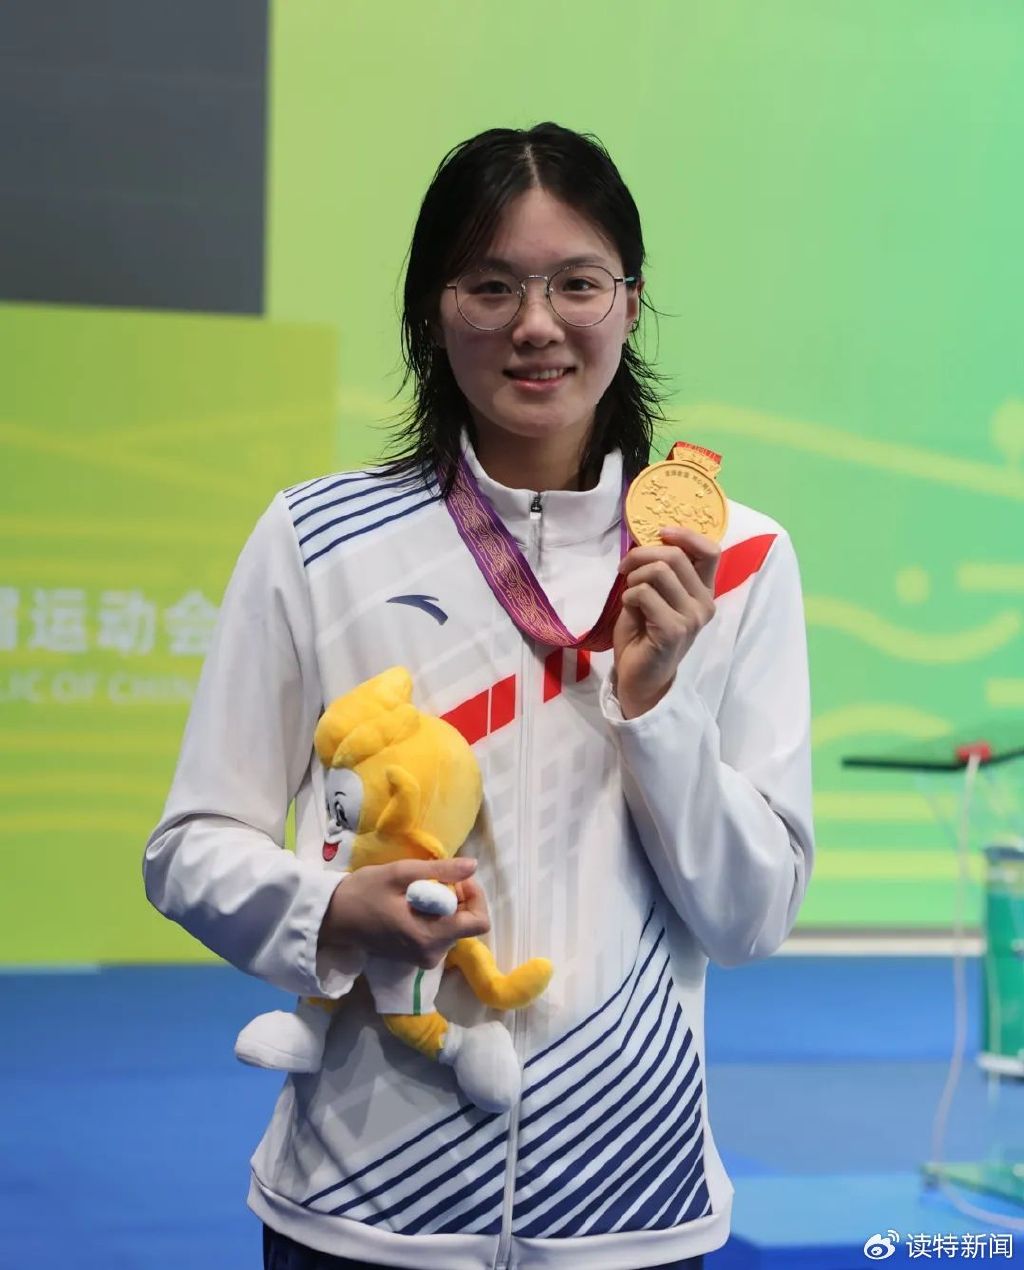 图源深圳特区报在今年4月的全国游泳冠军赛上,她与劳丽慧,秦帆,孔